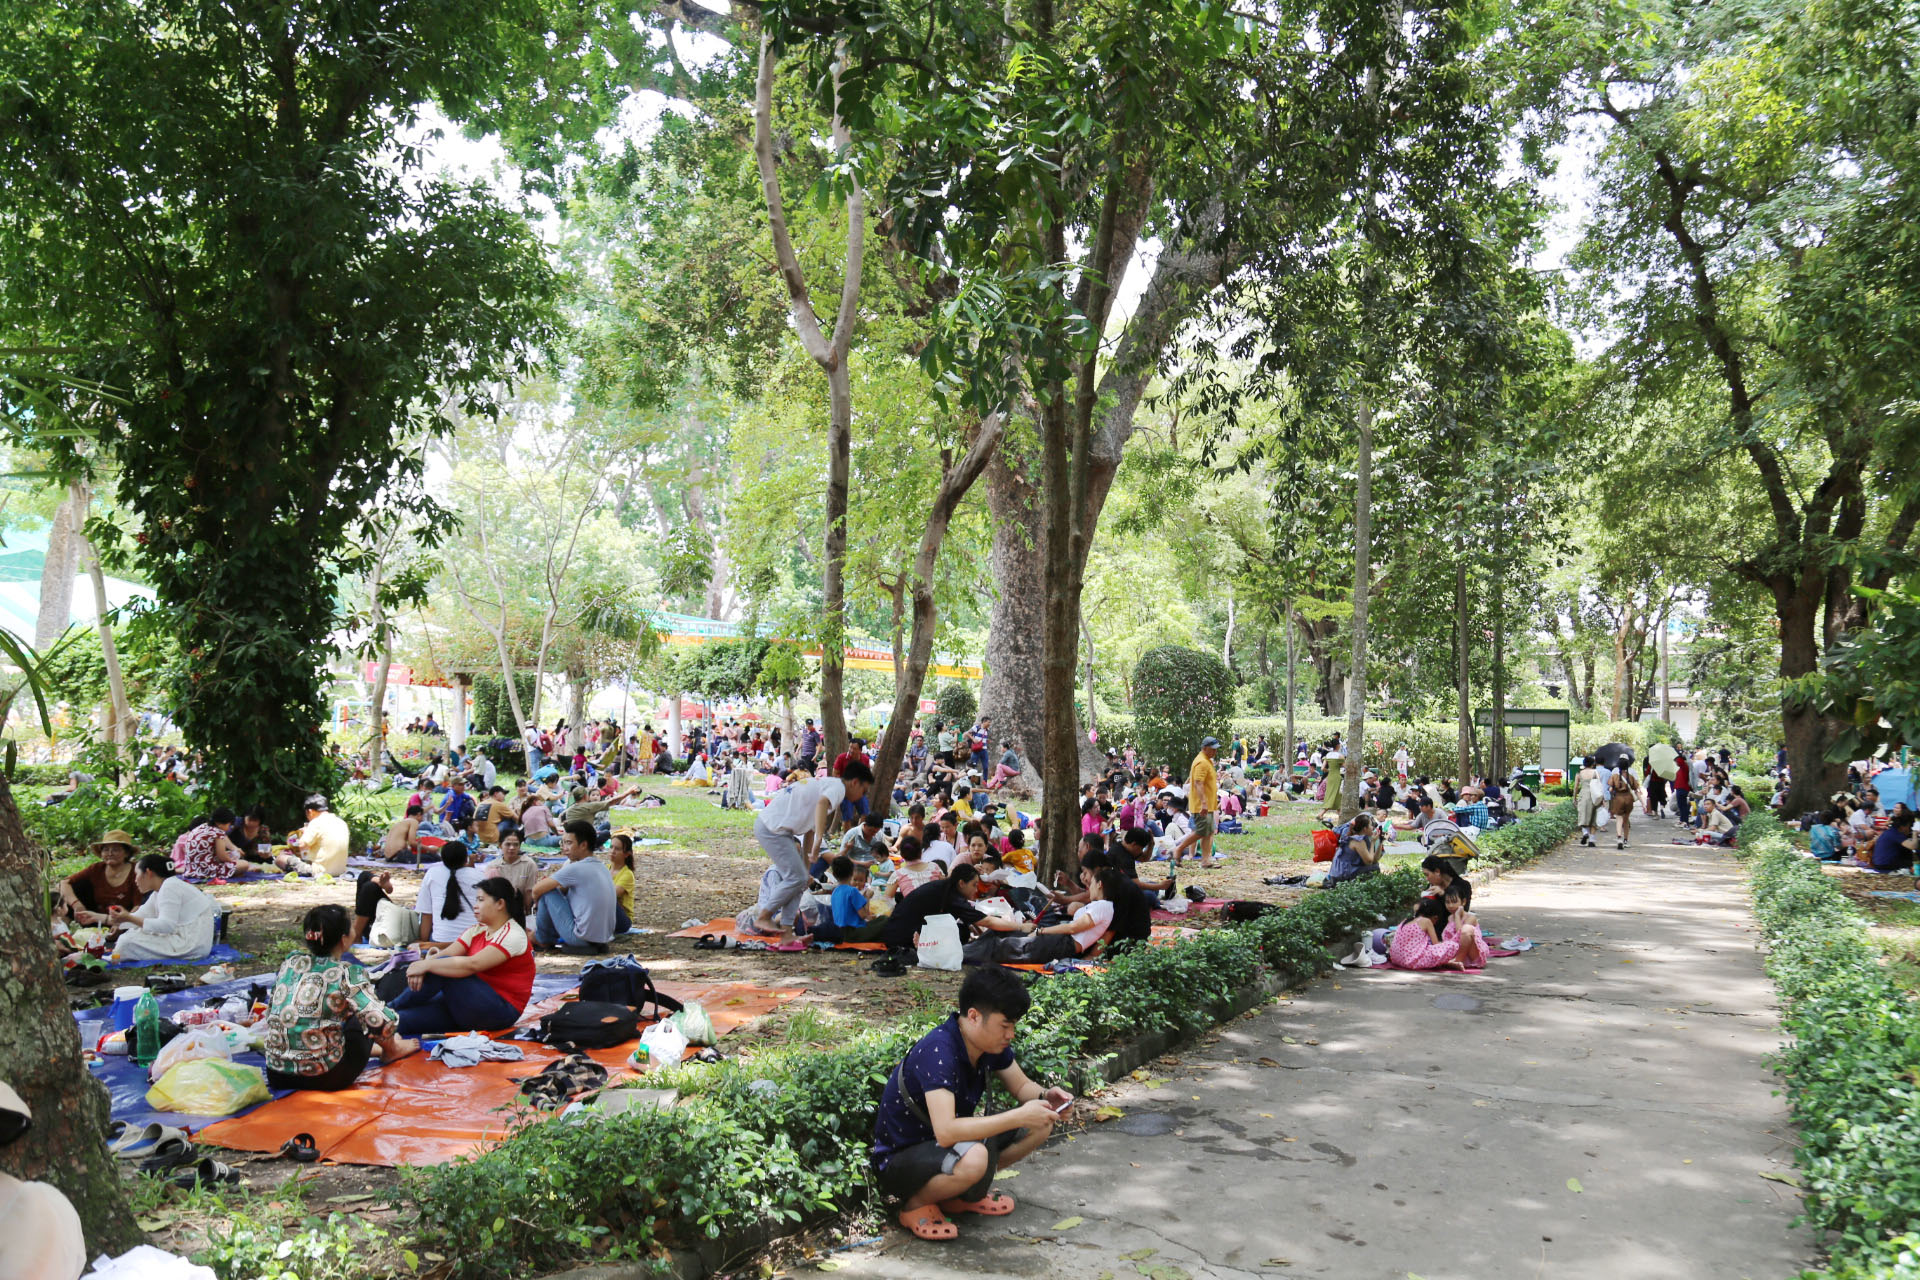 Thảo Cầm Viên Sài Gòn được xây dựng vào năm 1864 với tên gọi đầu tiên là Vườn Bách Thảo. Đây là một trong mười vườn thú lâu đời nhất thế giới và cũng là một trong những công viên lớn nhất Việt Nam với hơn 1.000 cá thể động vật thuộc 125 loài, hơn 2.000 cây gỗ thuộc 260 loài, hàng chục loại lan nội địa, xương rồng, bonsai và thảm cỏ xanh trên diện tích hơn 17ha.